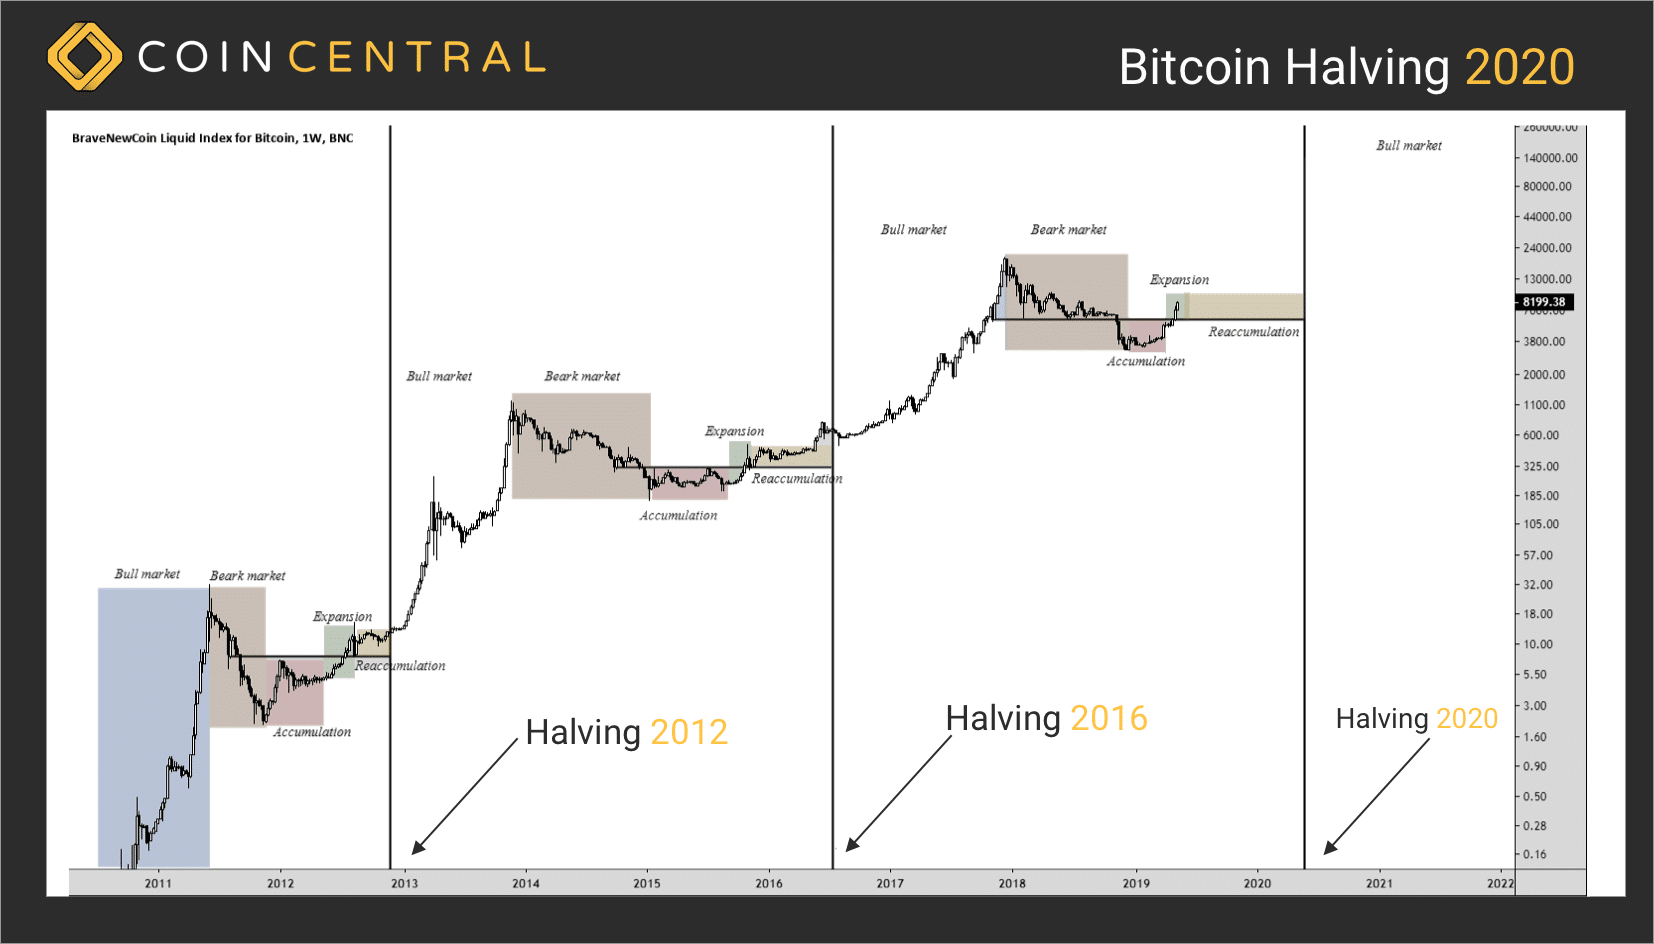 ¿Habrá un salto de precios después de que bitcoin se reduzca a la mitad en 2020? Sólo el tiempo dirá.